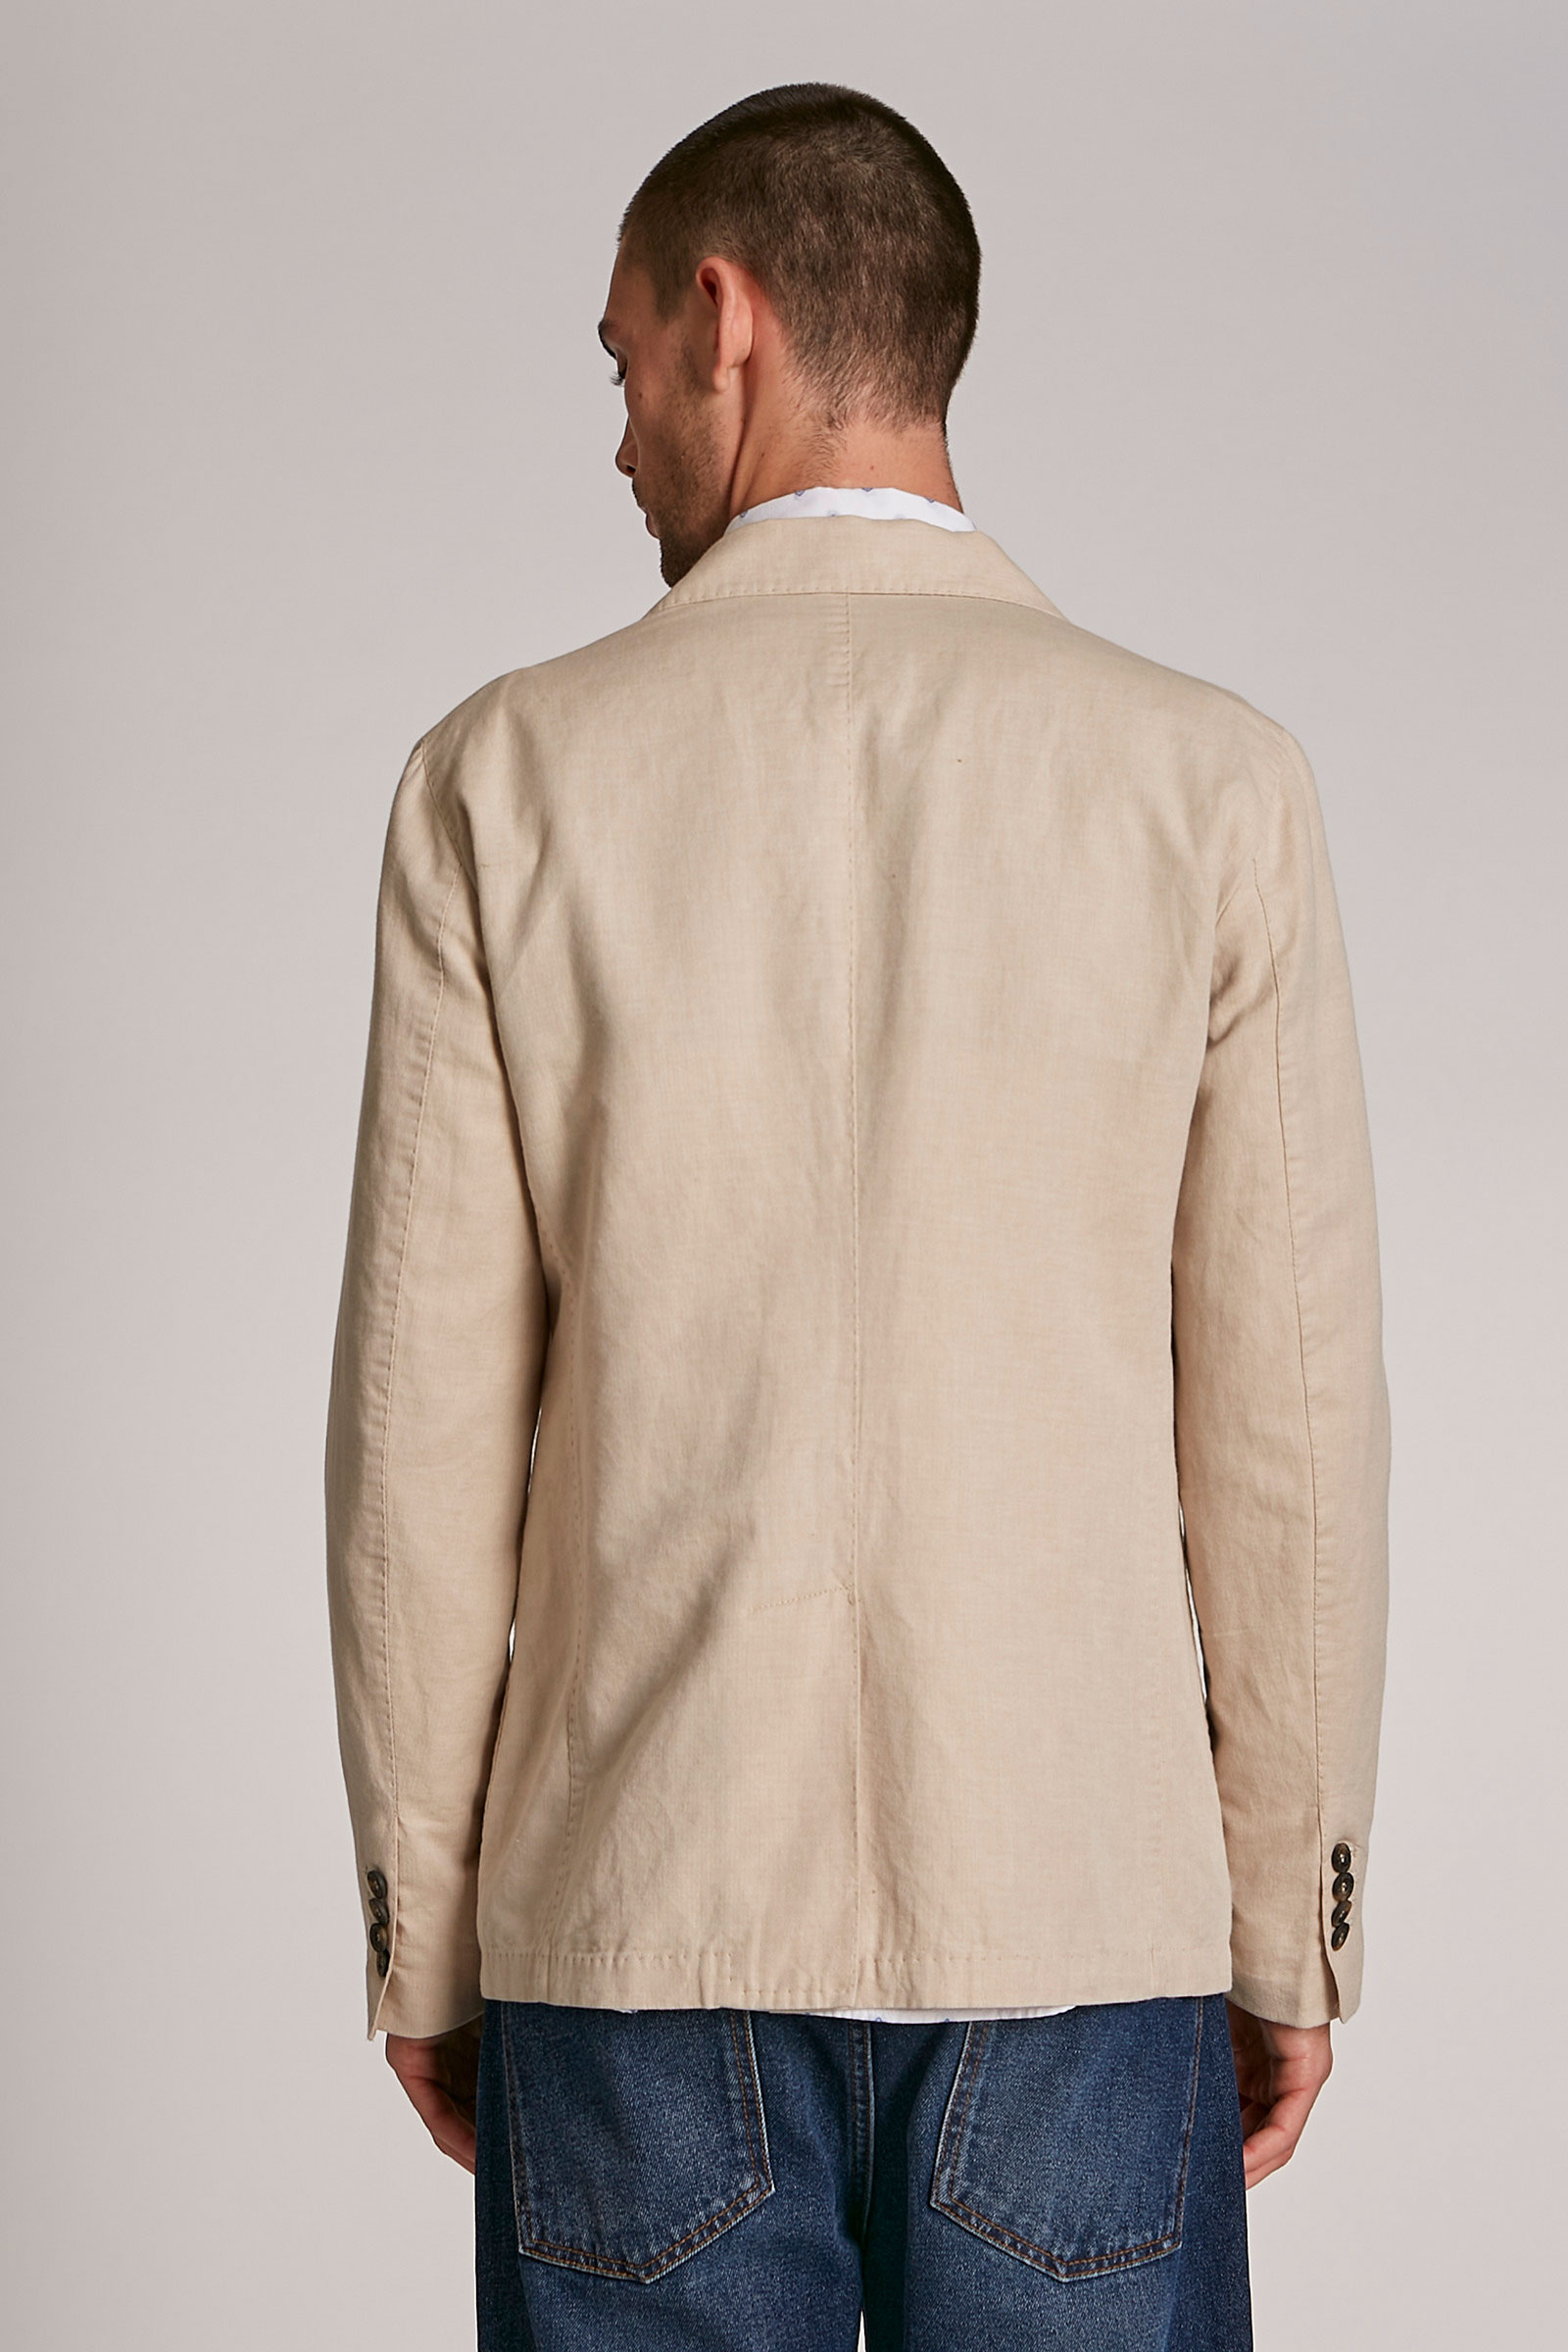 Chaqueta de hombre de mezcla de algodón y lino, modelo blazer, corte  regular Almond Milk/OptWhite La Martina